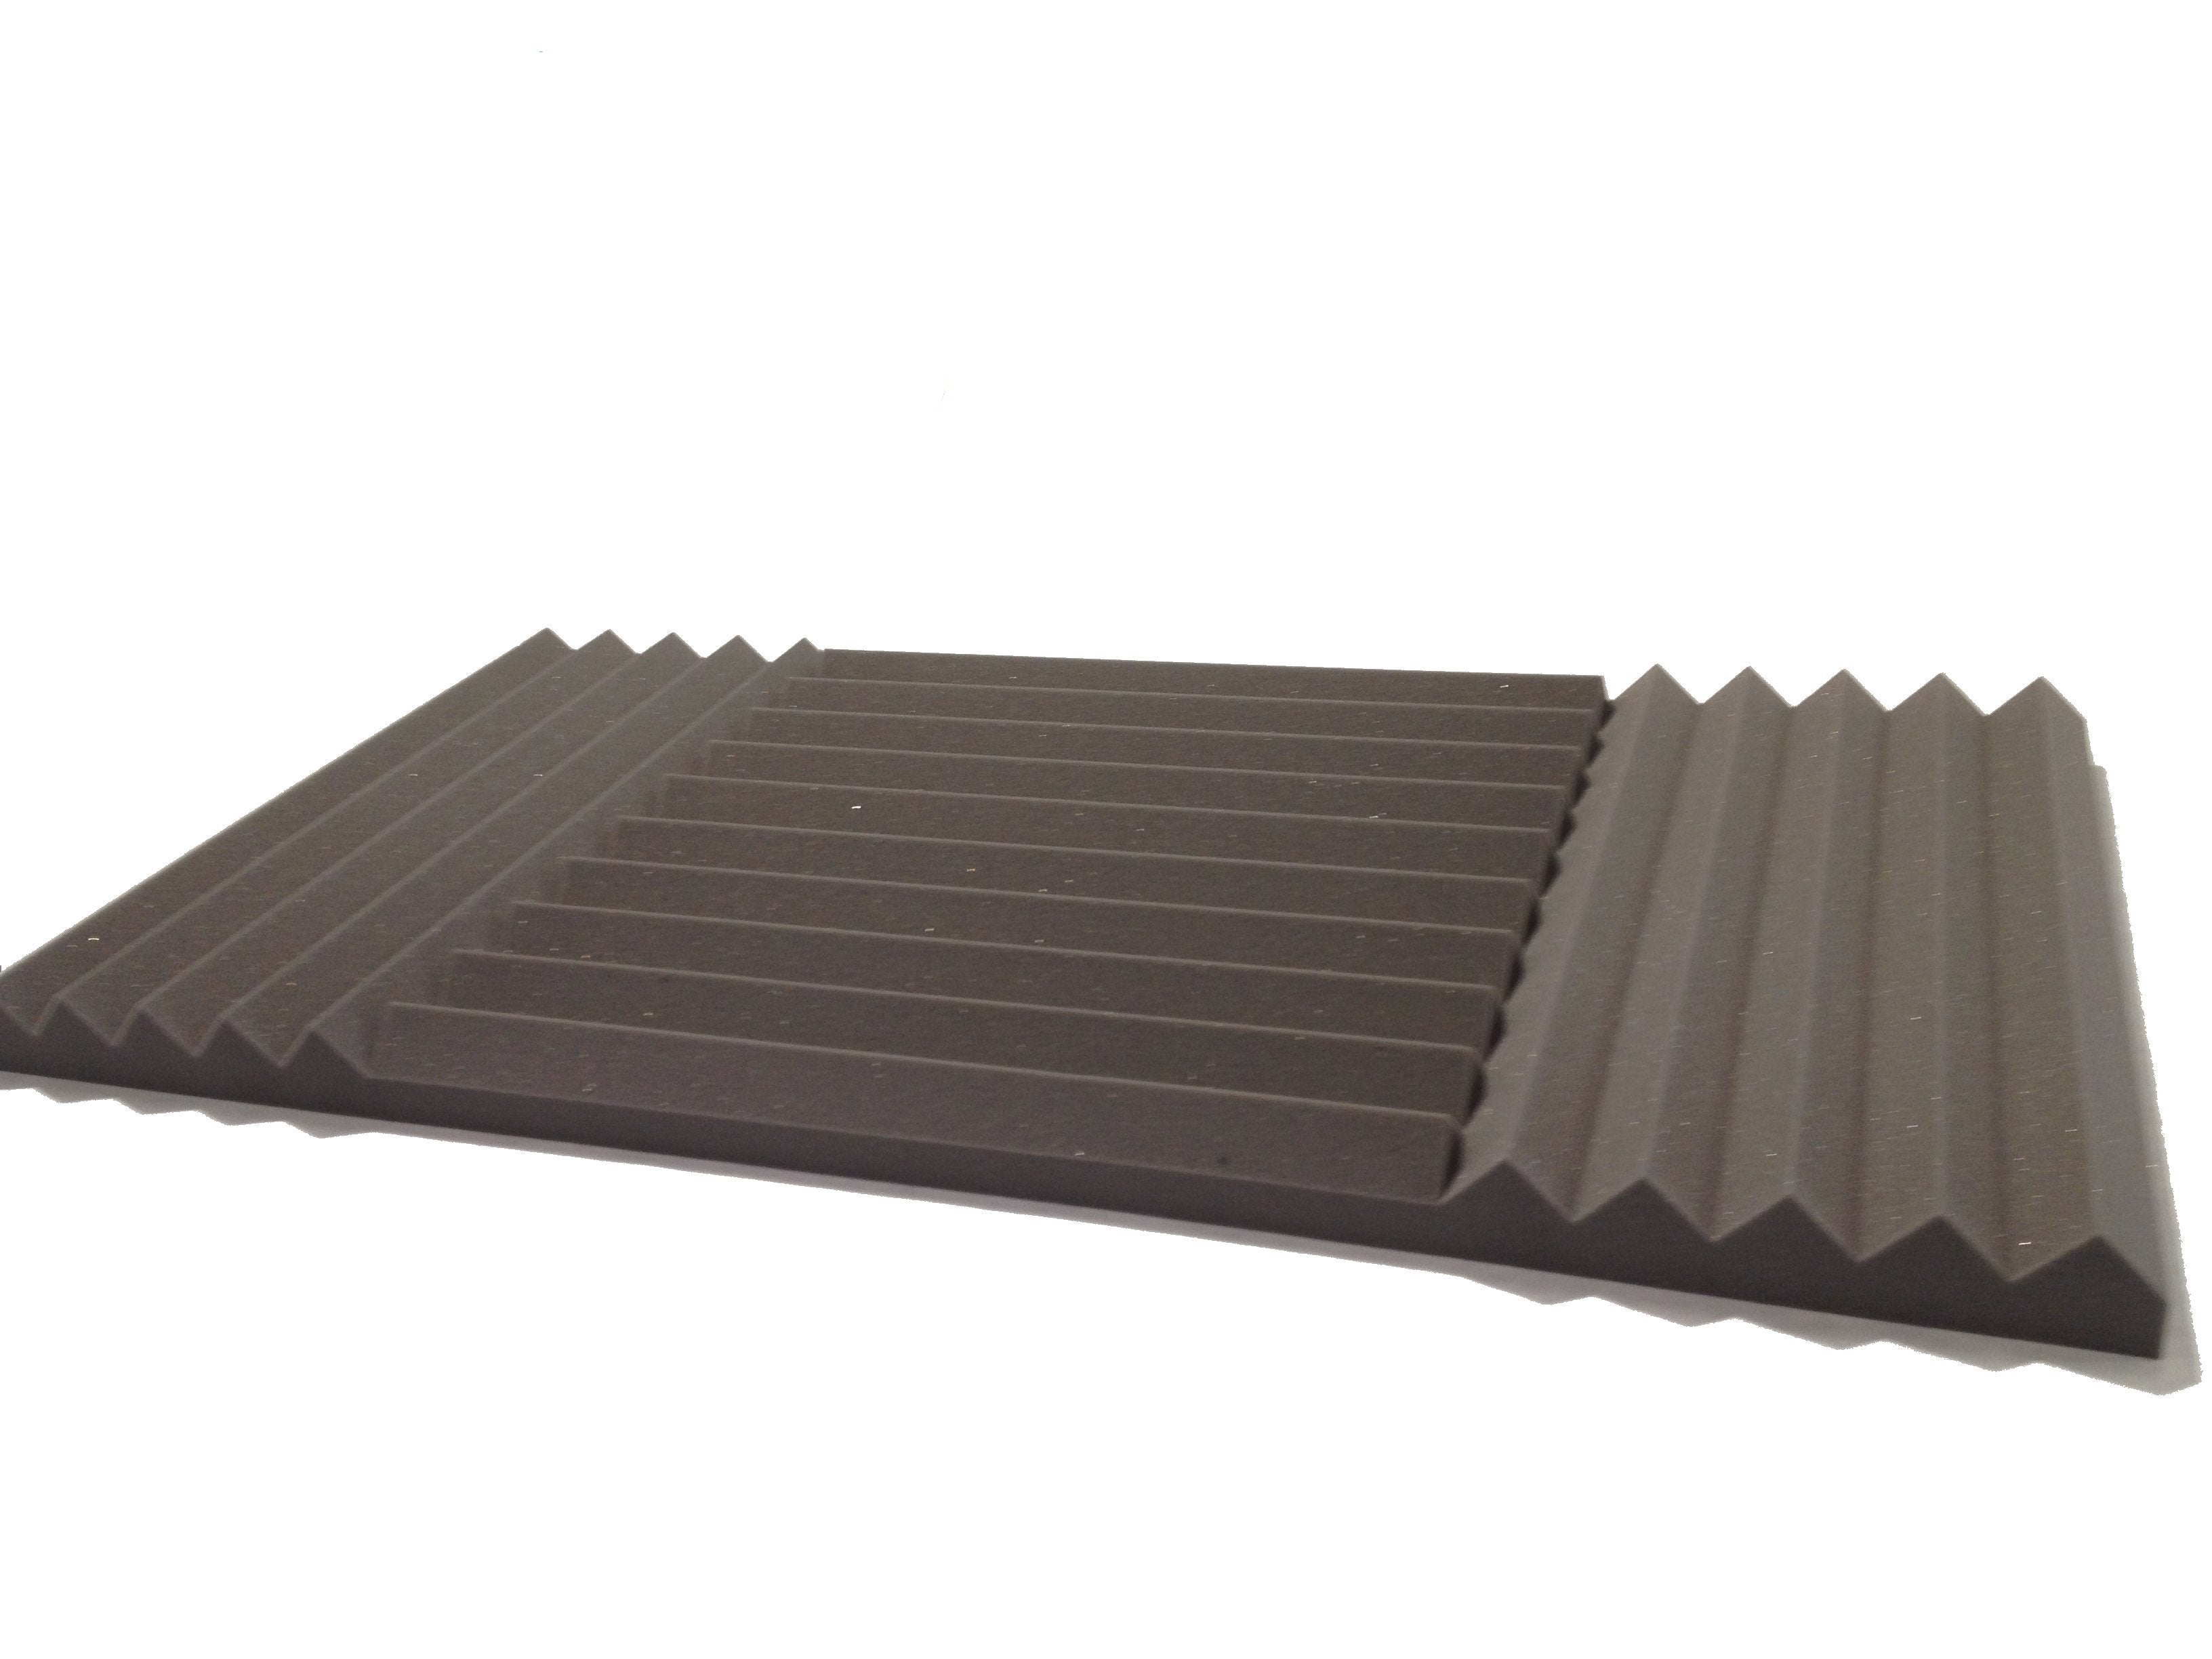 Wedge PRO 30"x15" Acoustic Studio Foam Tile Kit - Advanced Acoustics